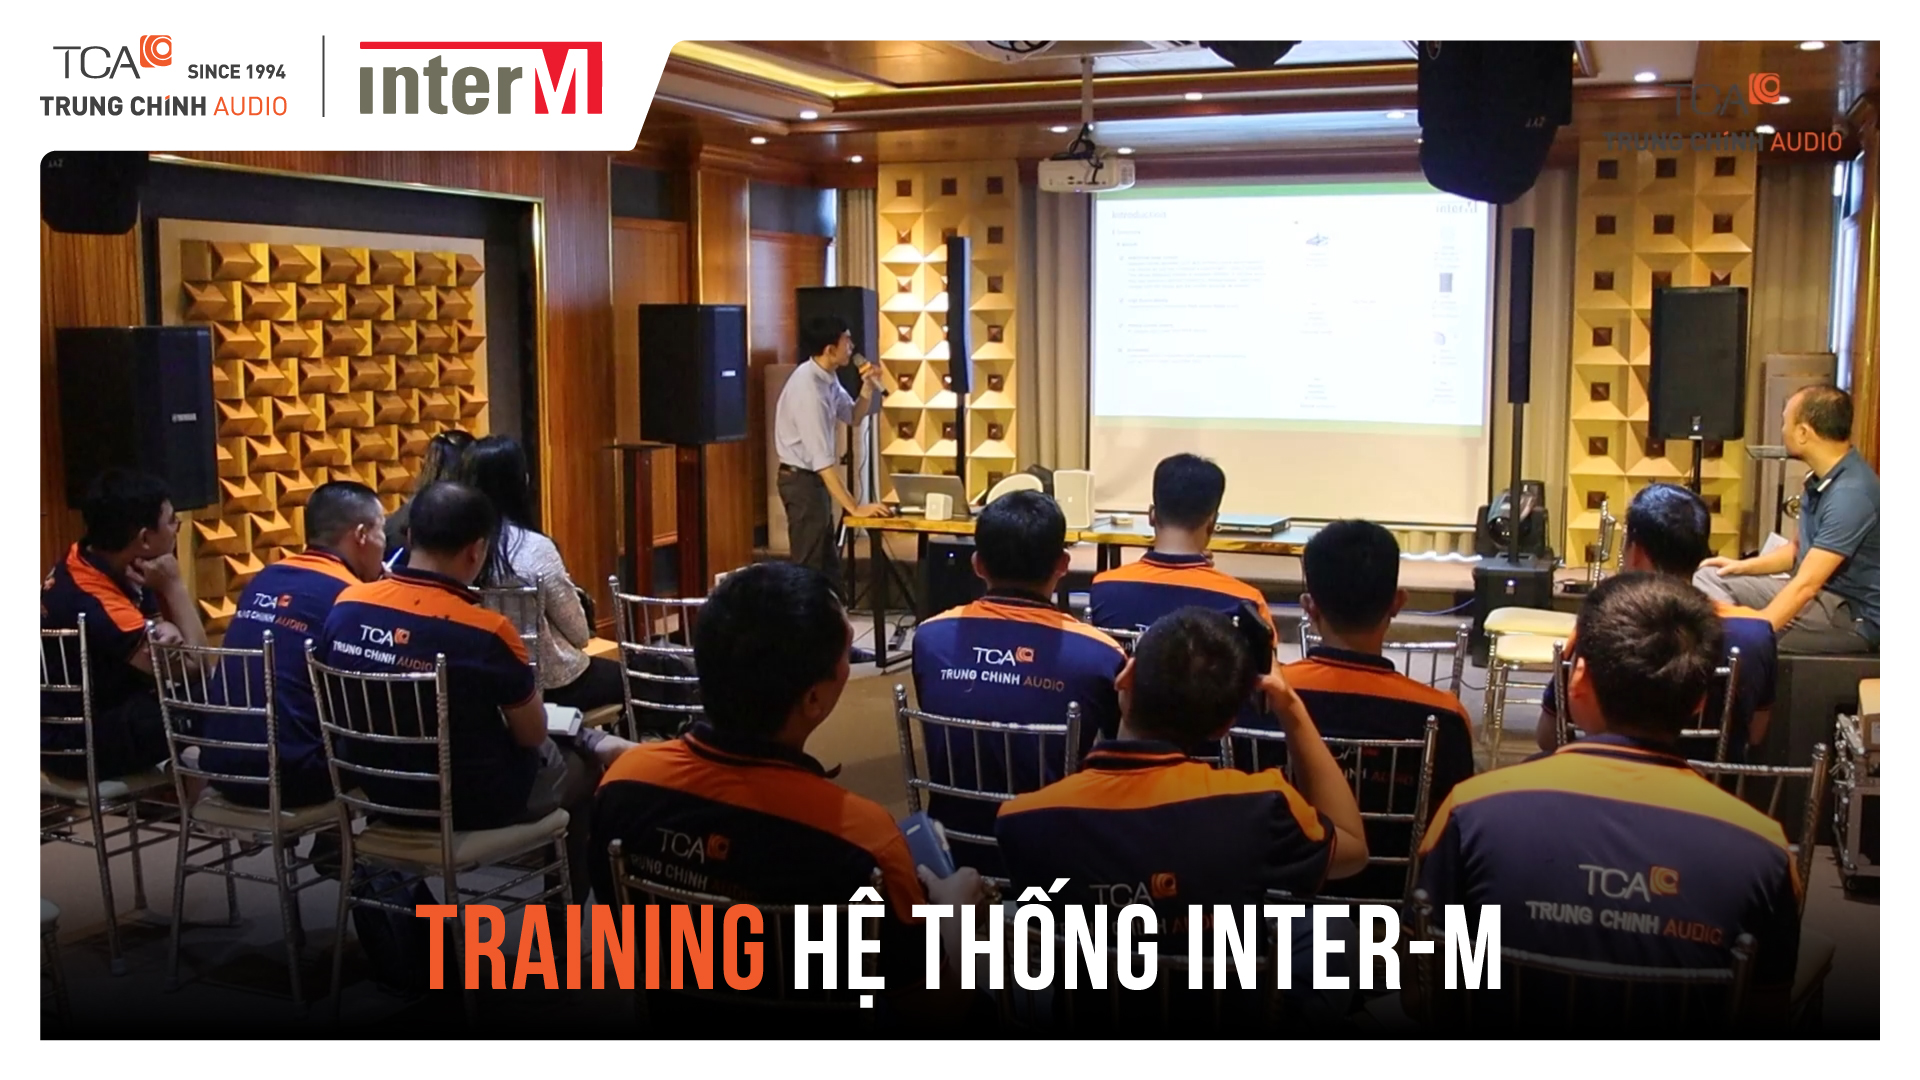 Giới thiệu & Training hệ thống loa IP Inter-M mới tại Trụ sở TCA - Trung Chính Audio